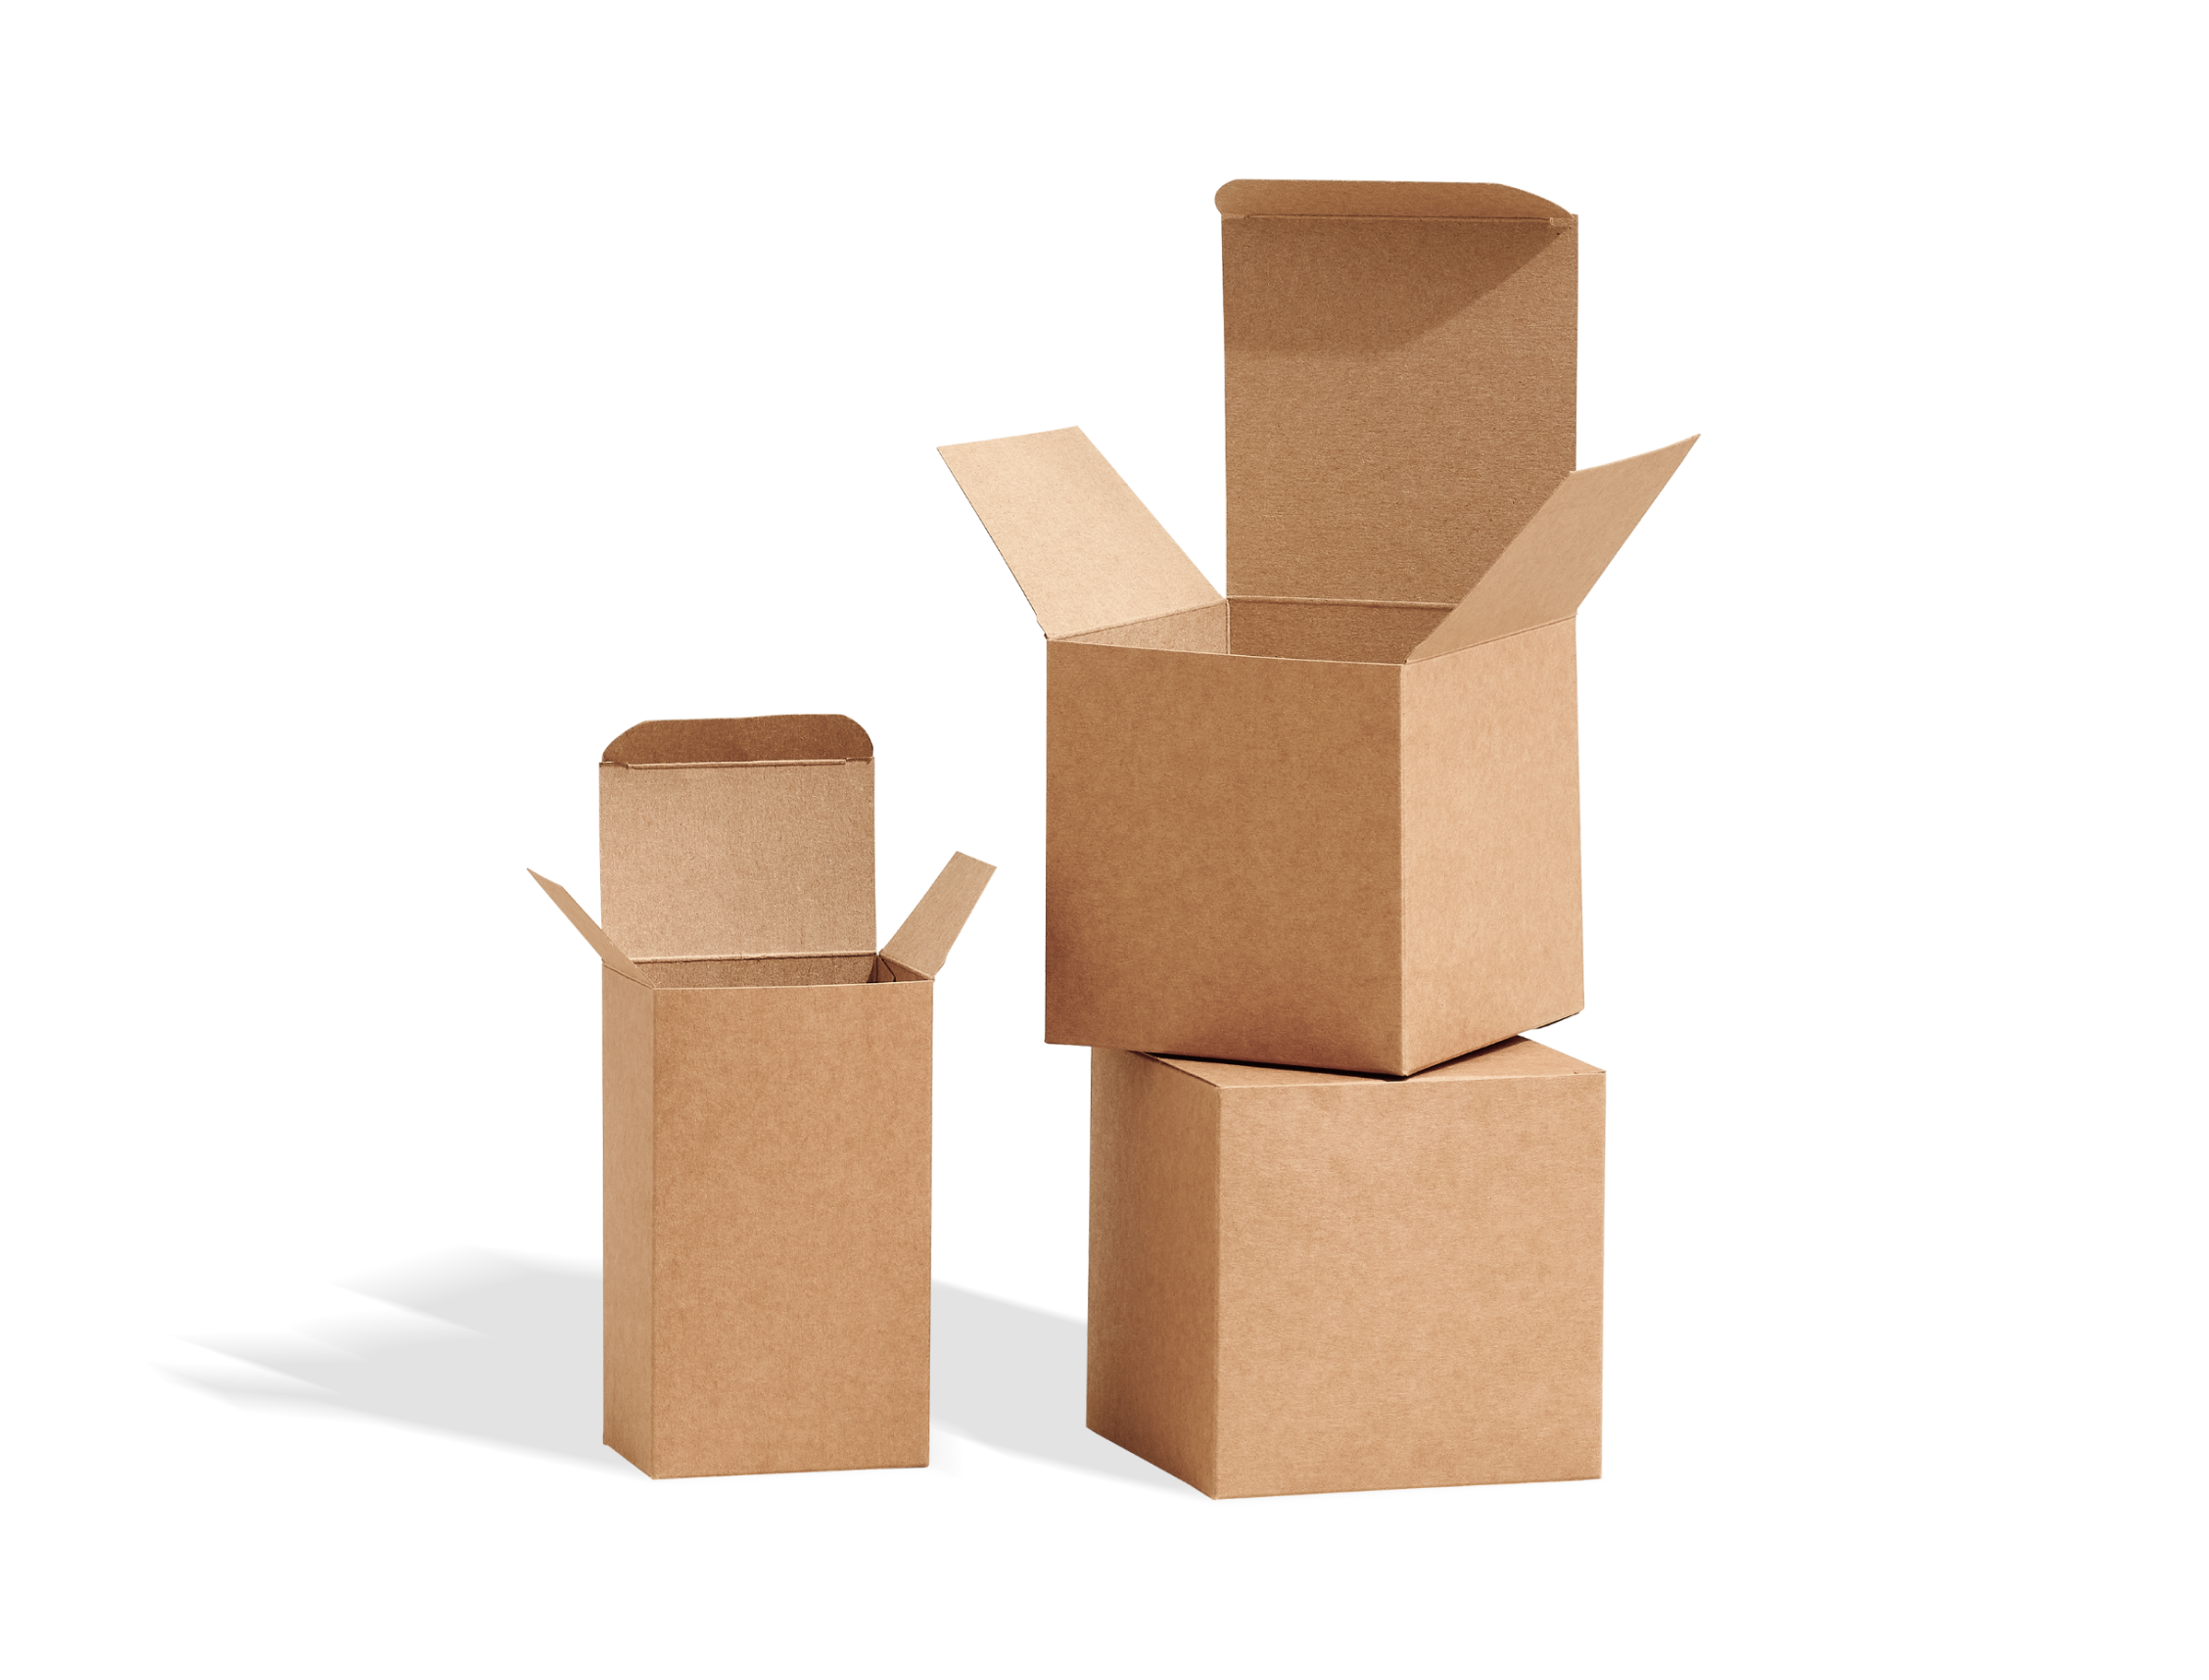 Plain Product Box